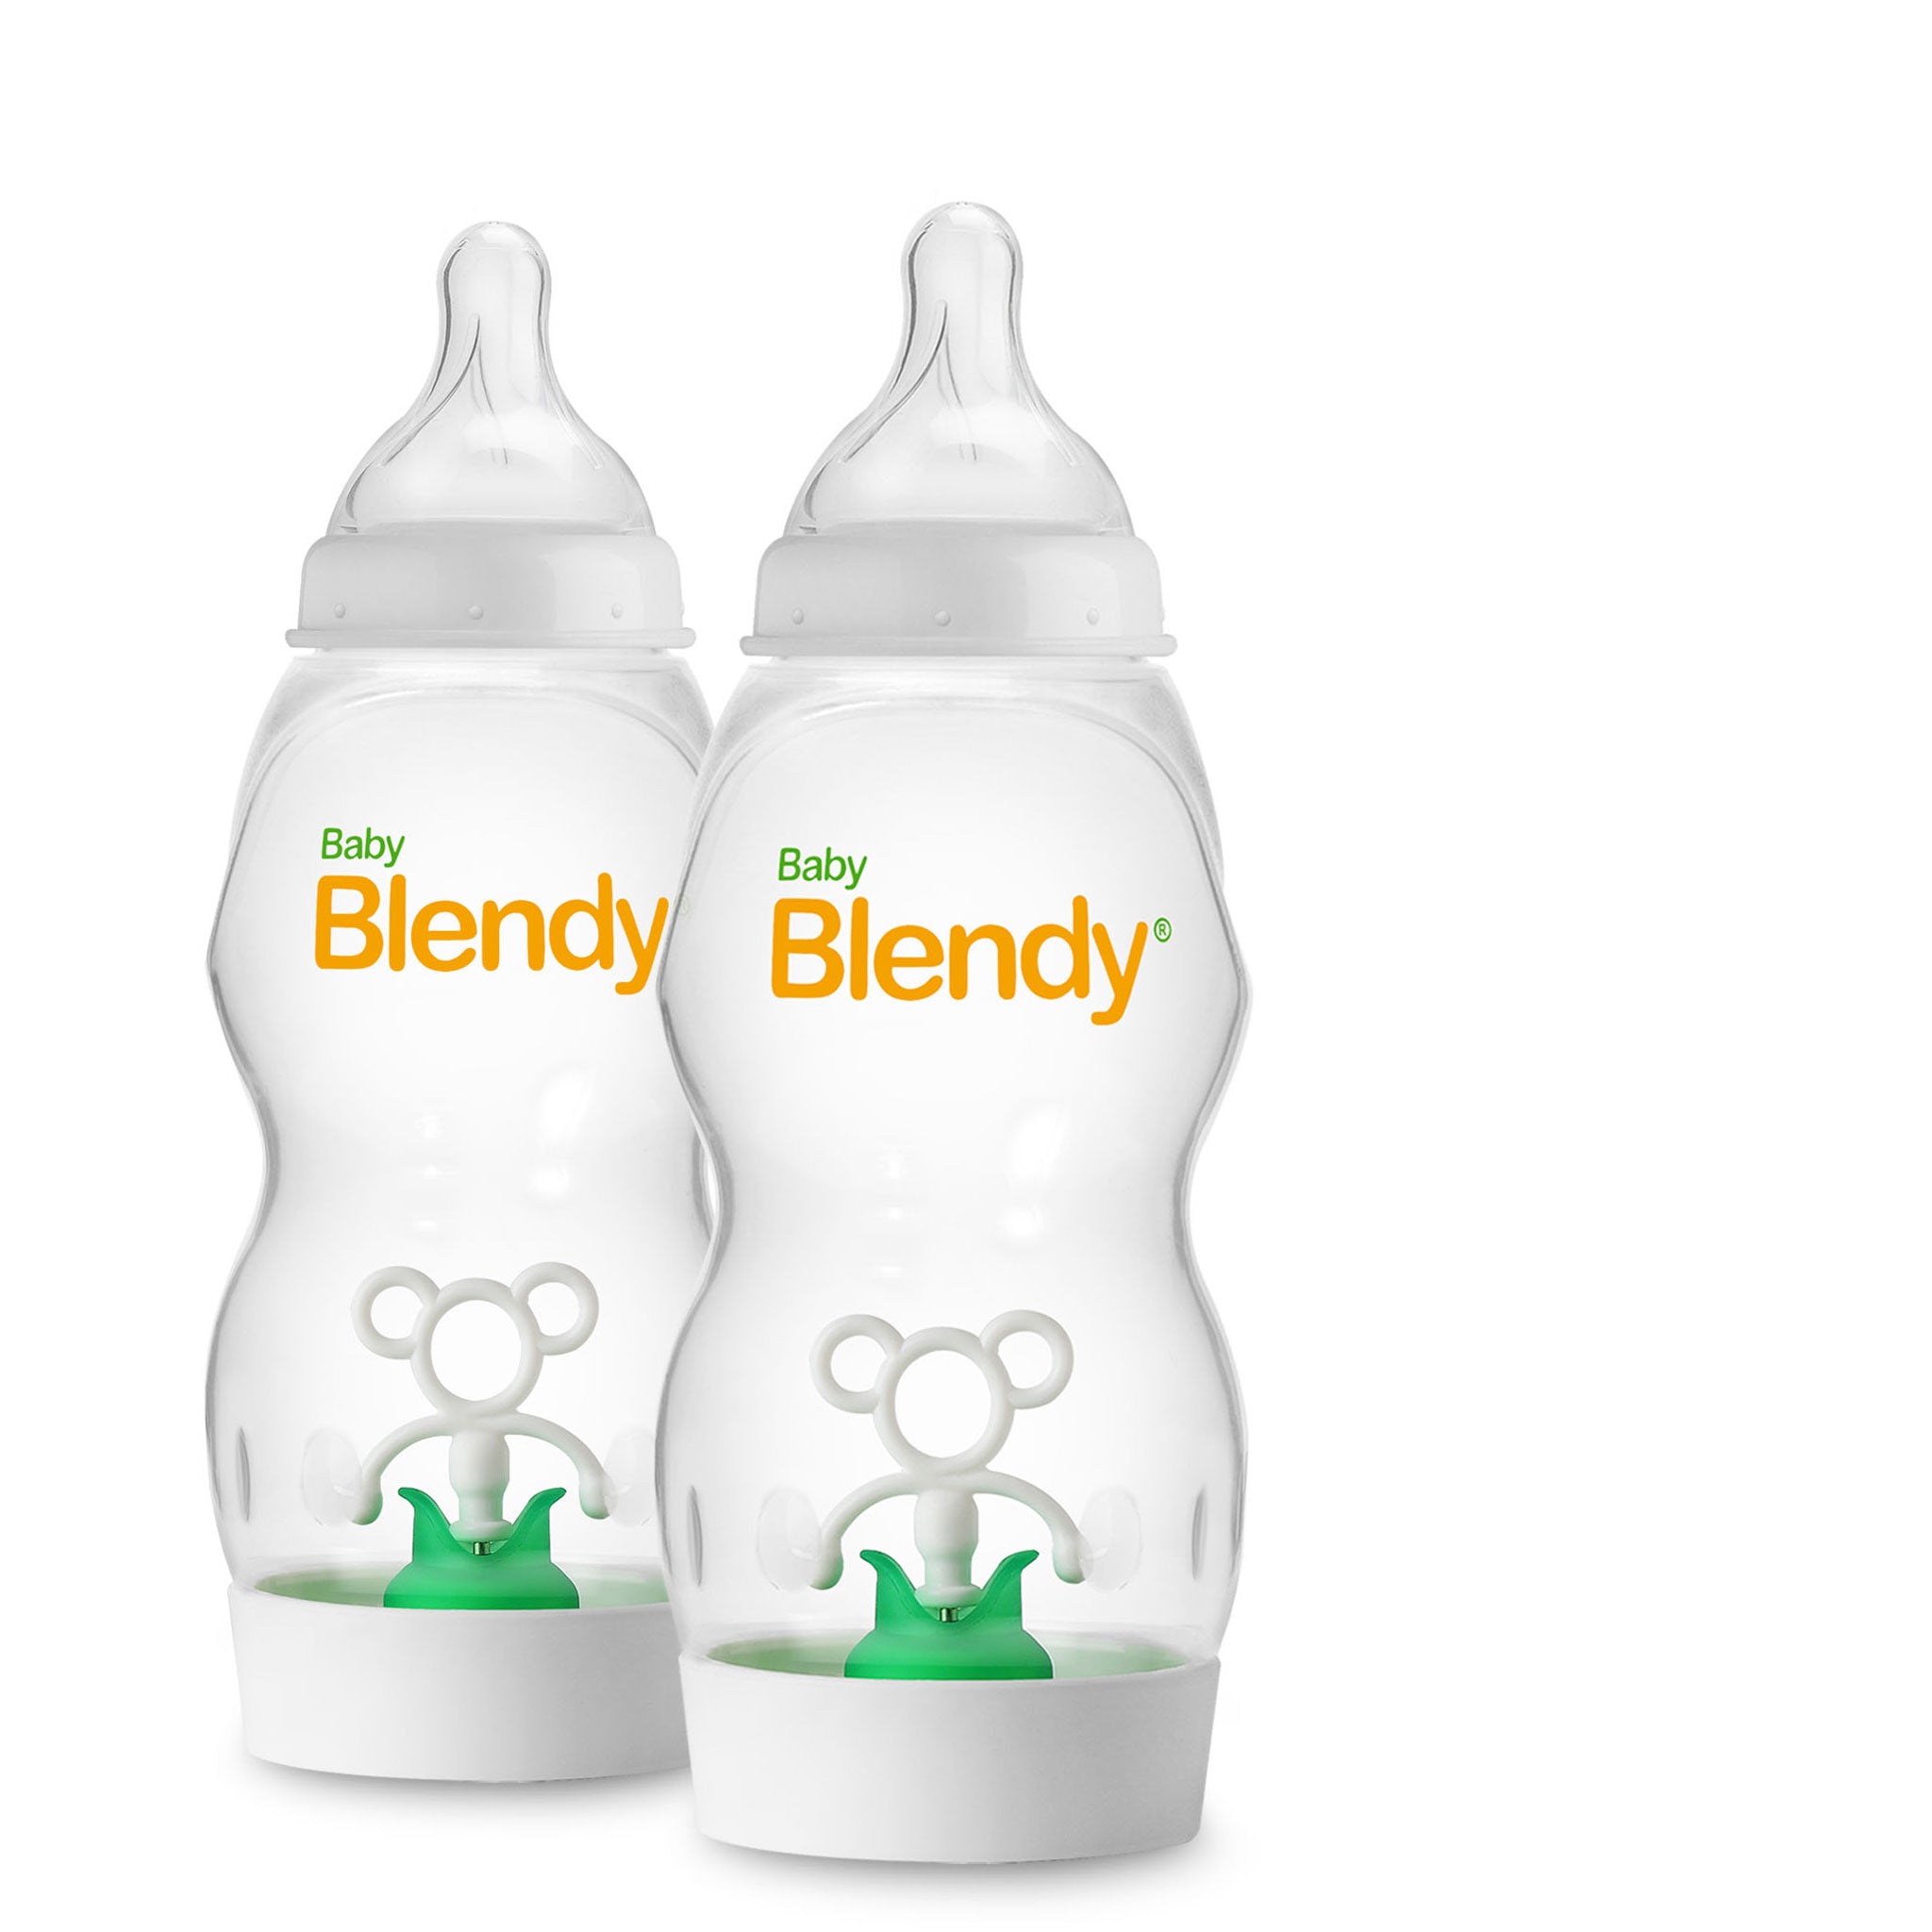 Baby Products Online - Portable Newborn Baby Milk Powder Dispenser